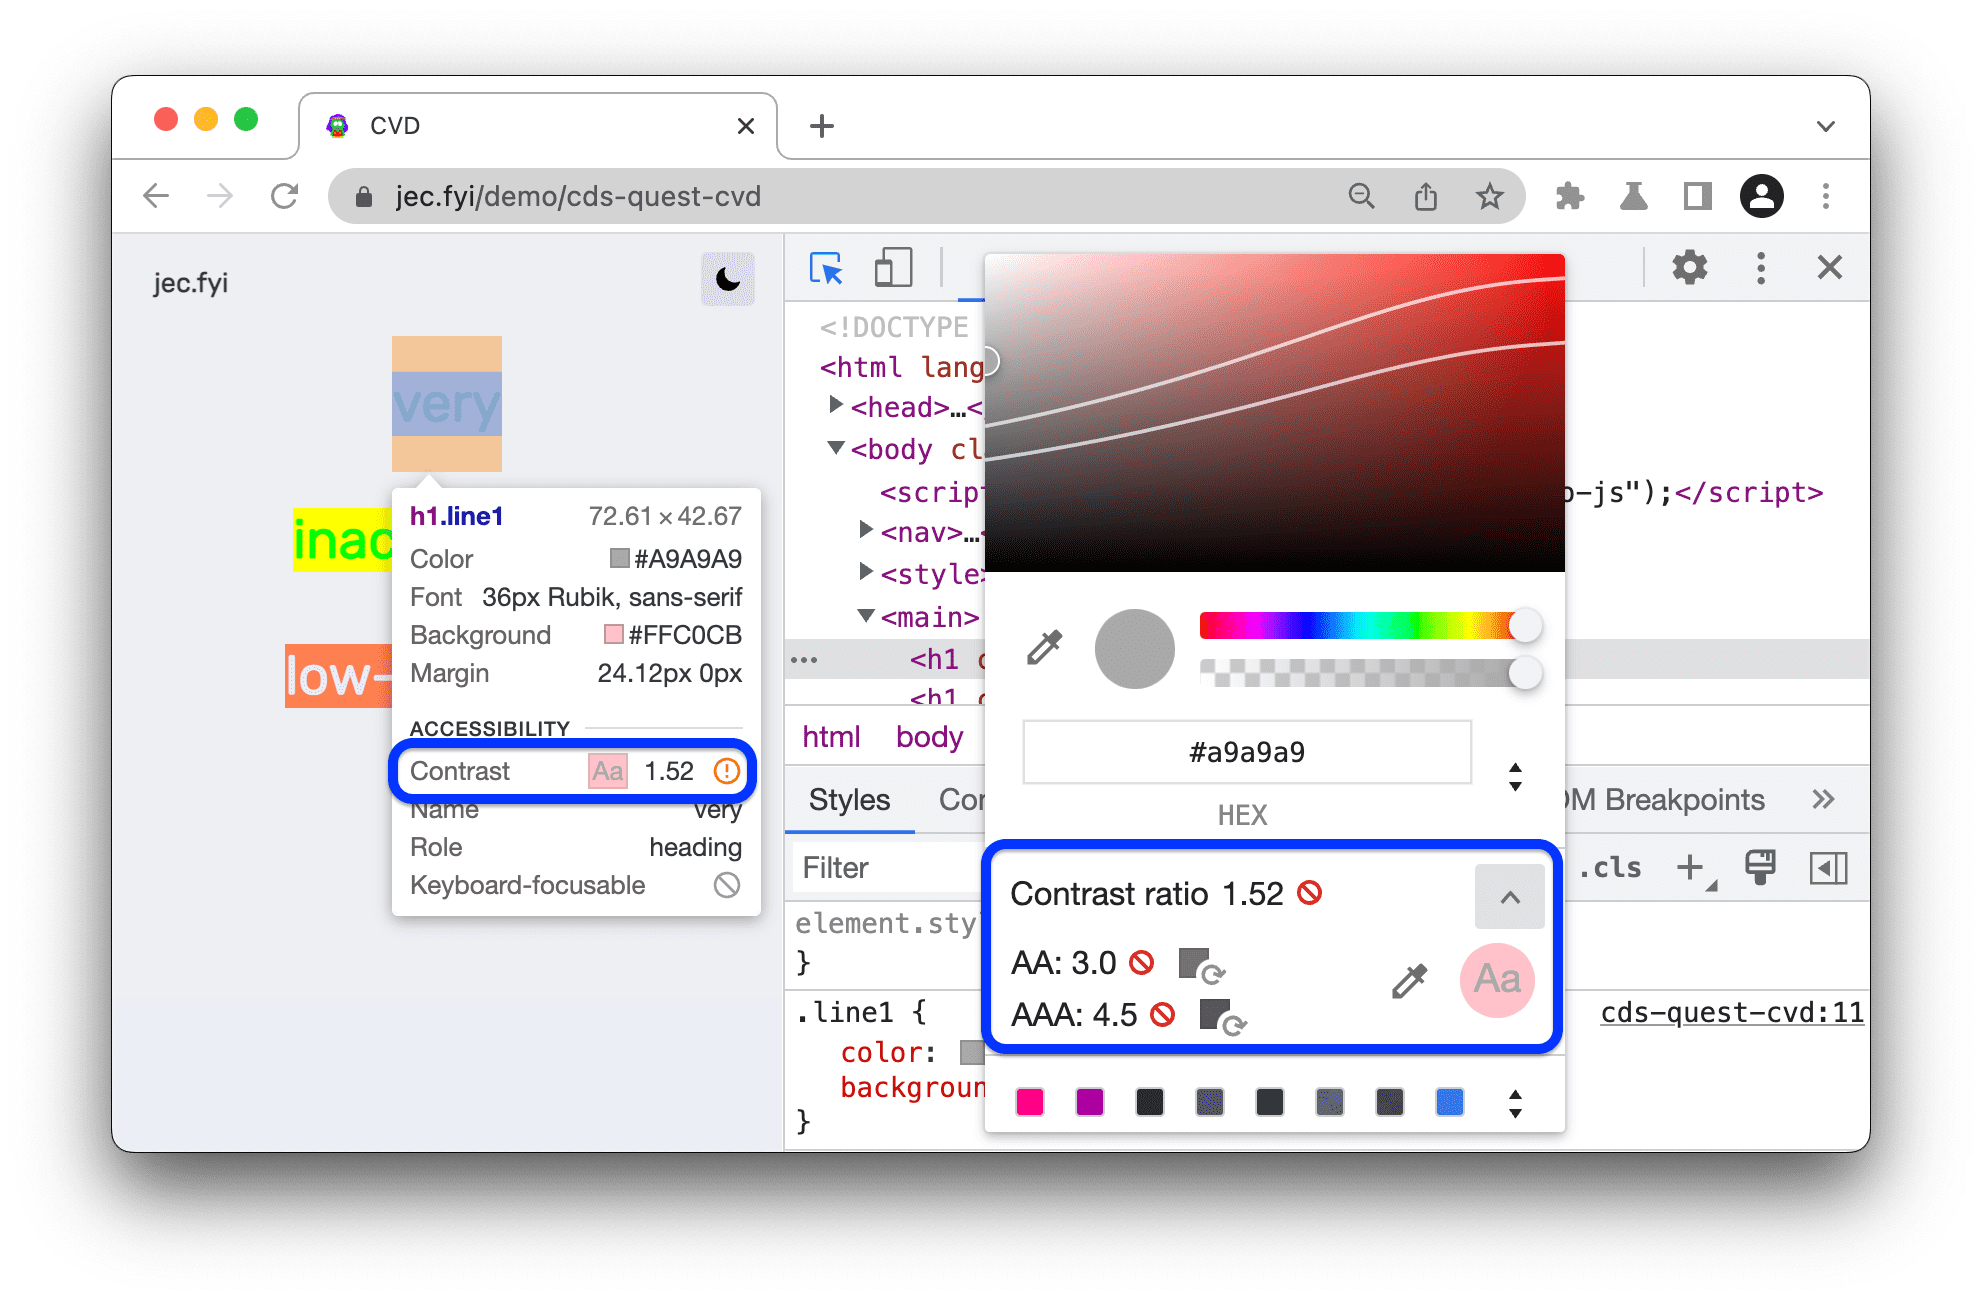 ツールチップでコントラスト比を選択できます。カラー選択ツールを使用して、他の色の比率を測定することもできます。配給の基準は AA と AAA です。